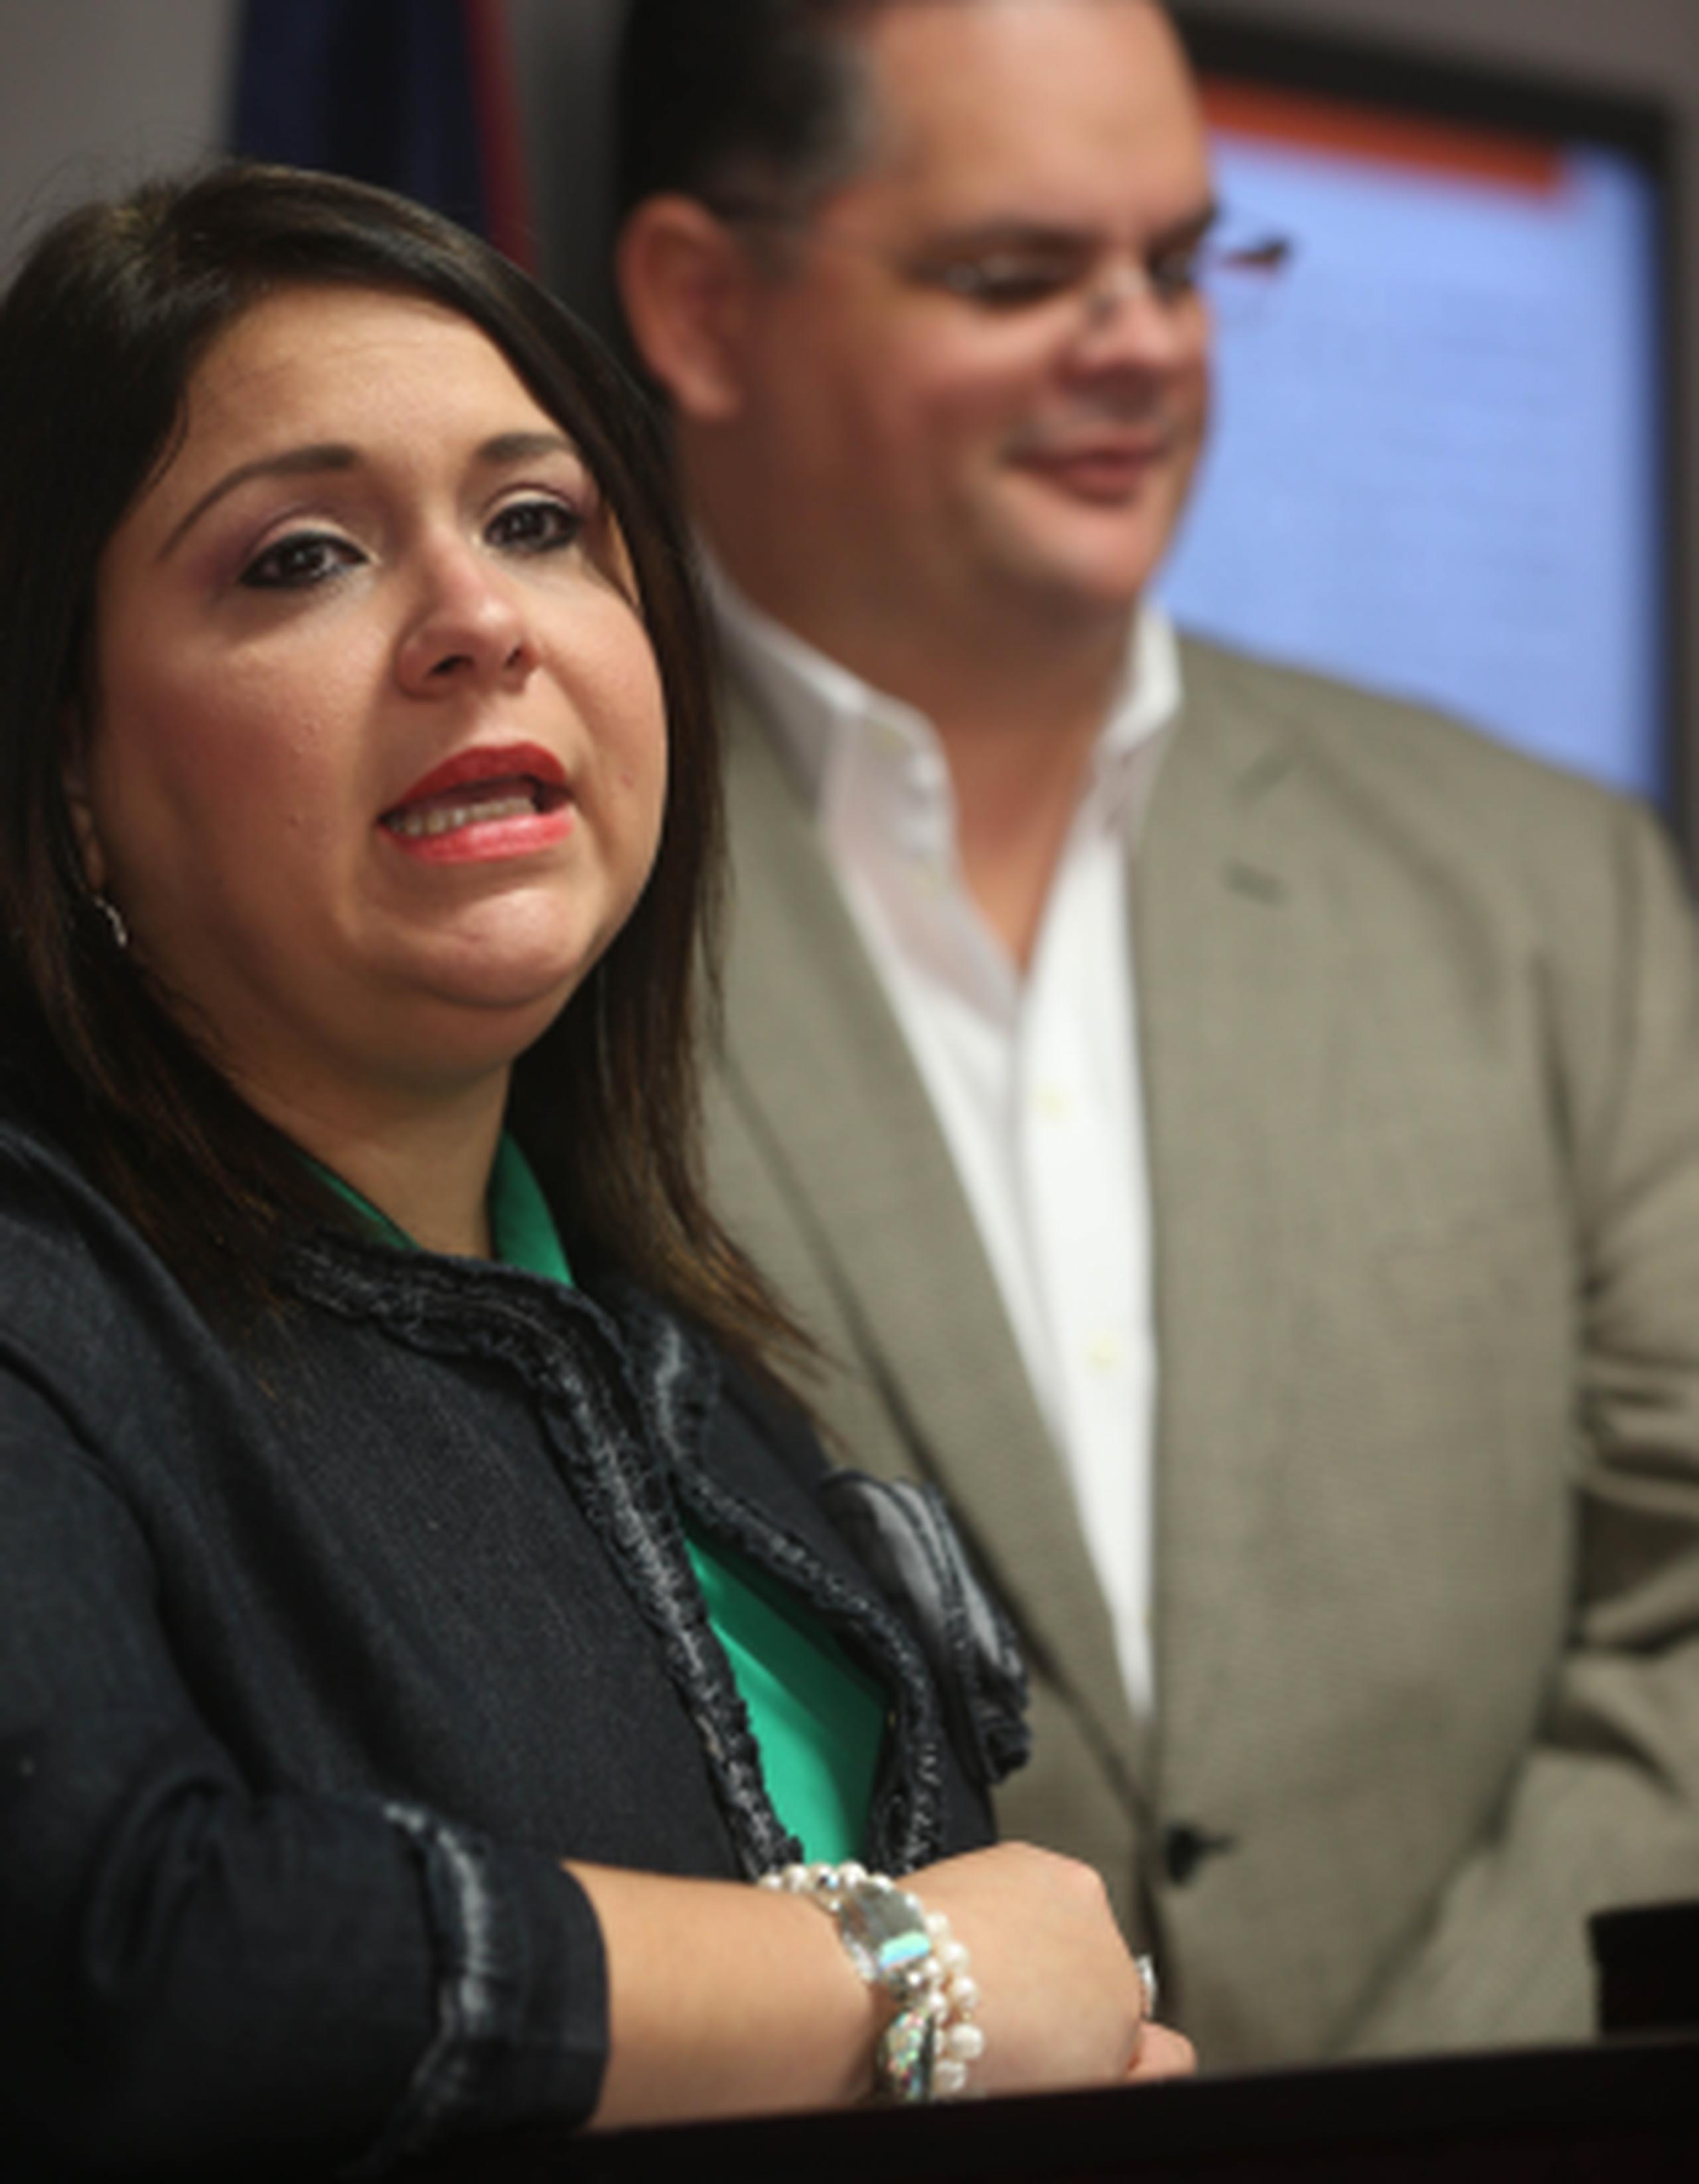 En conferencia de prensa en el Senado, Mari Tere González opinó que personal de la UPR podría estar en riesgo en estos momentos. (mariel.mejia@gfrmedia.com)